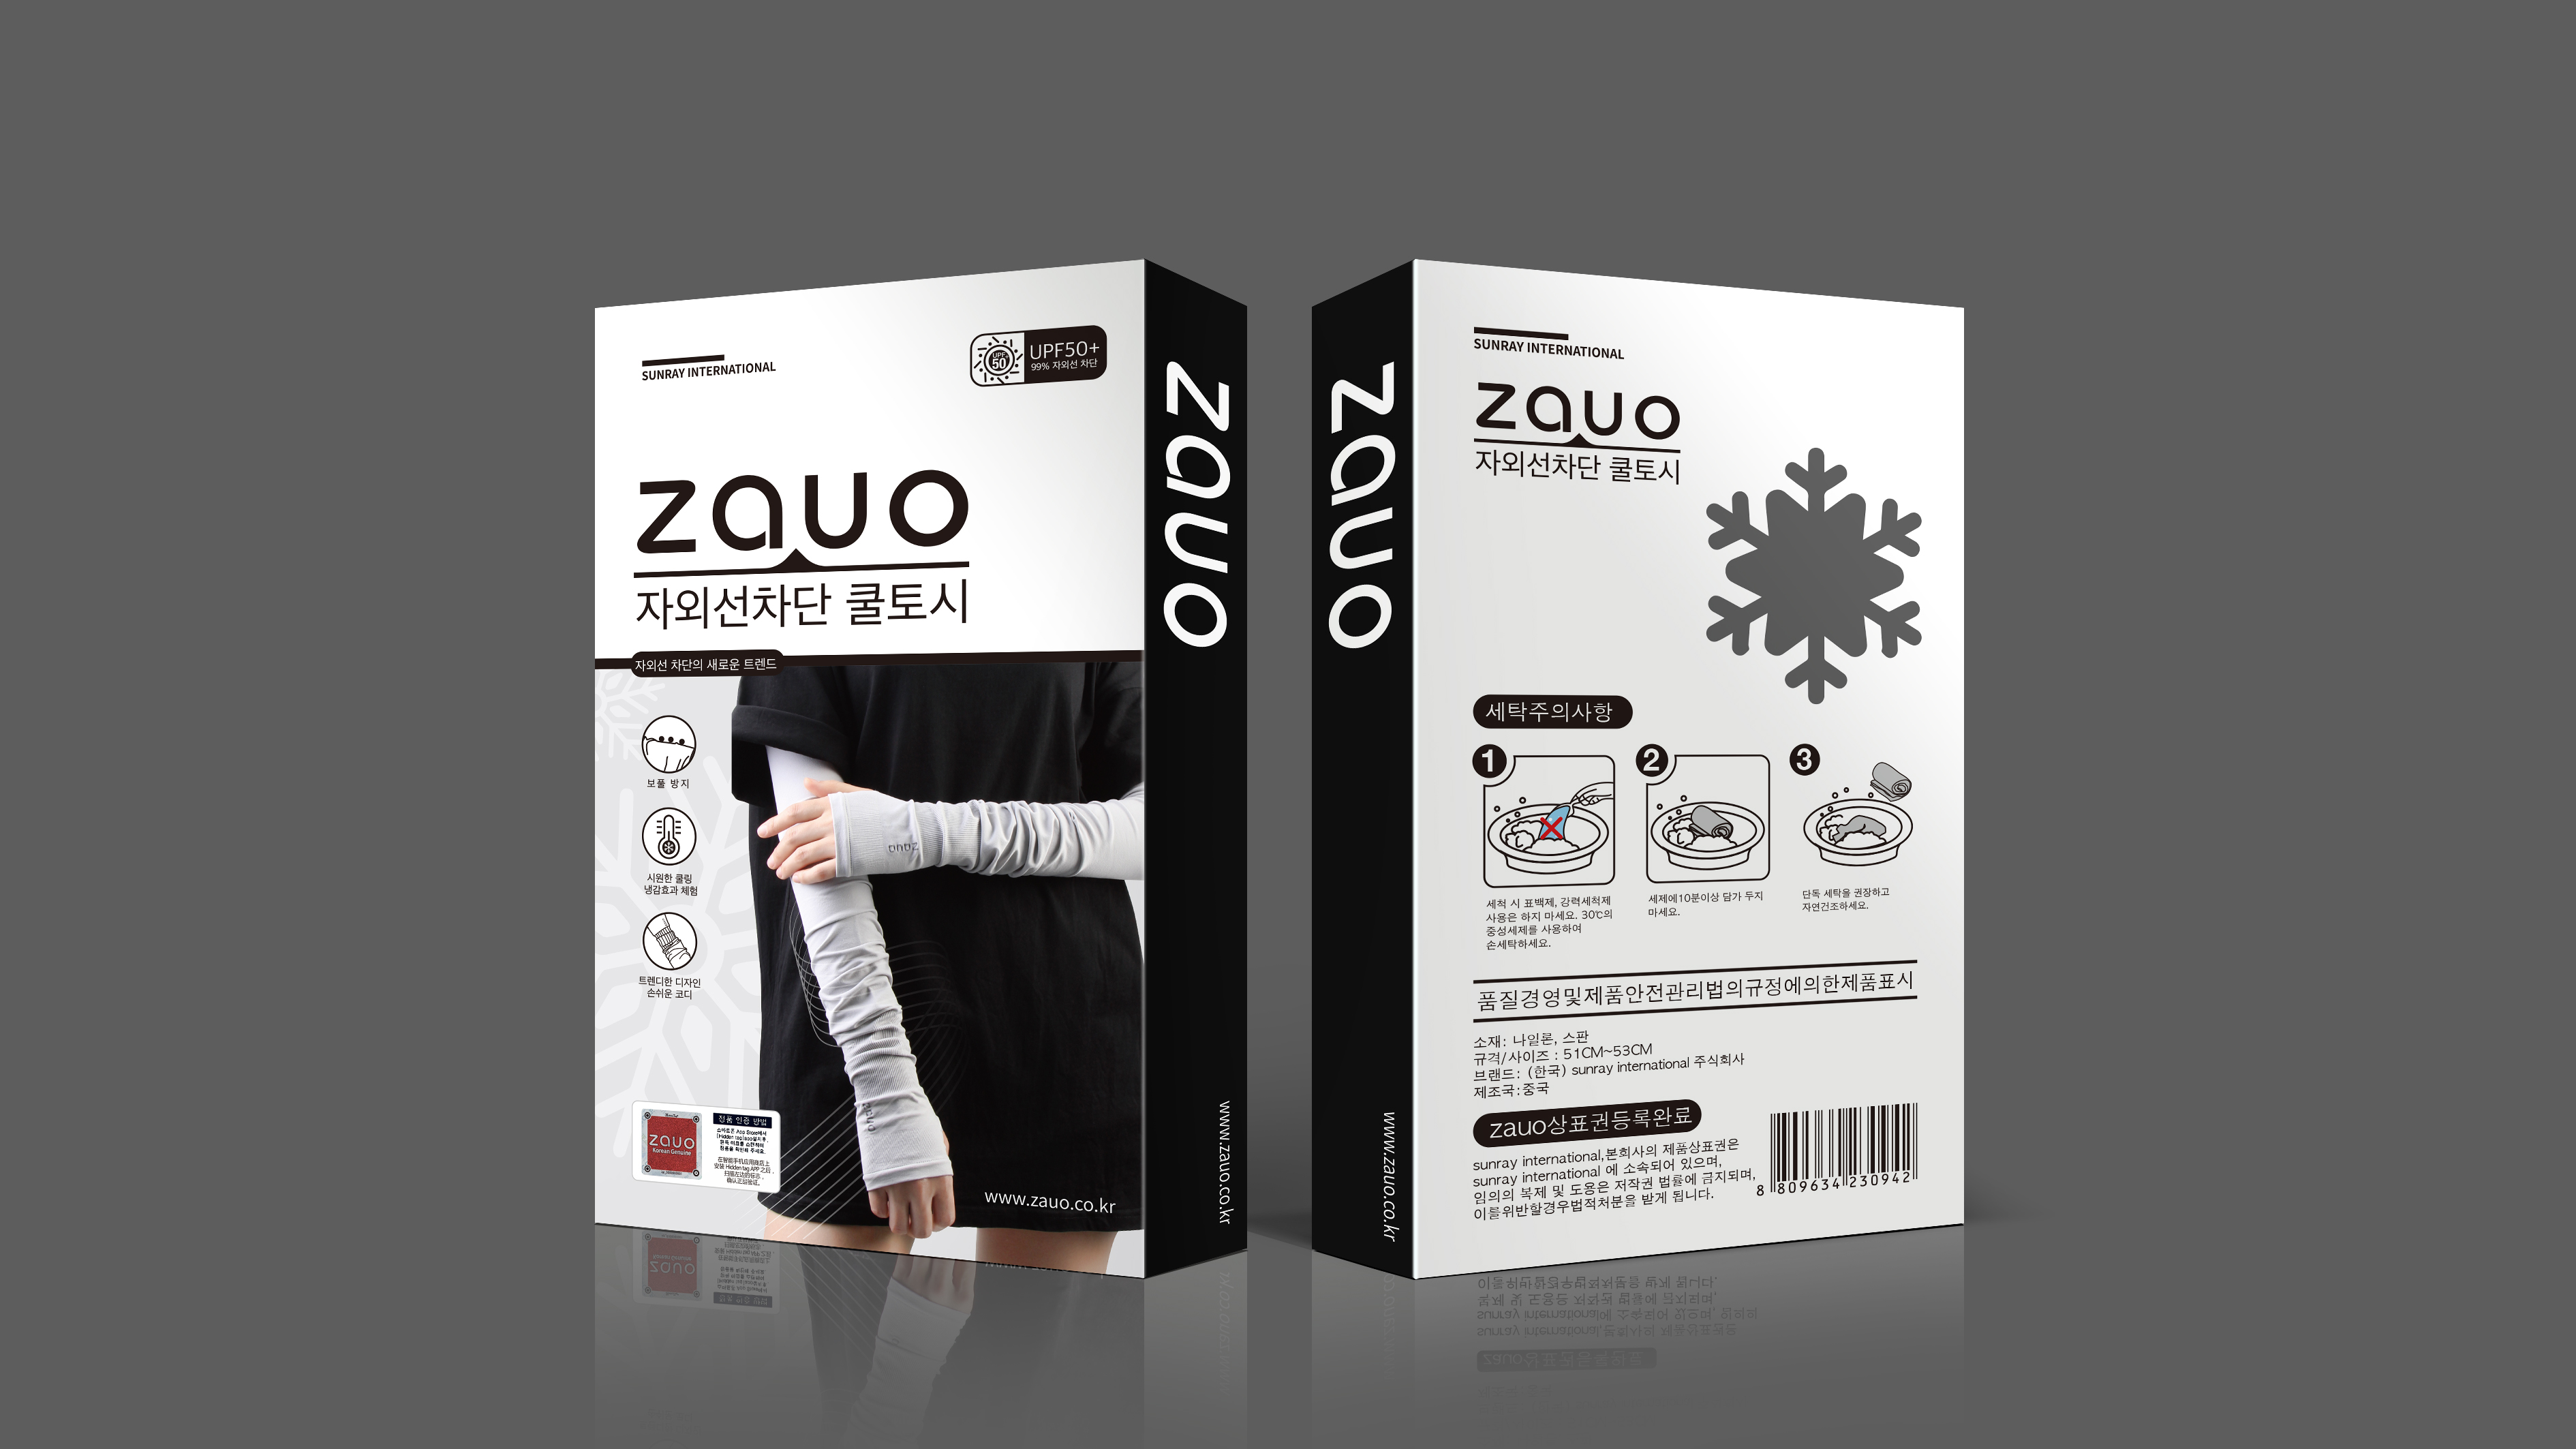 zauo瘦腿袜品牌包装设计